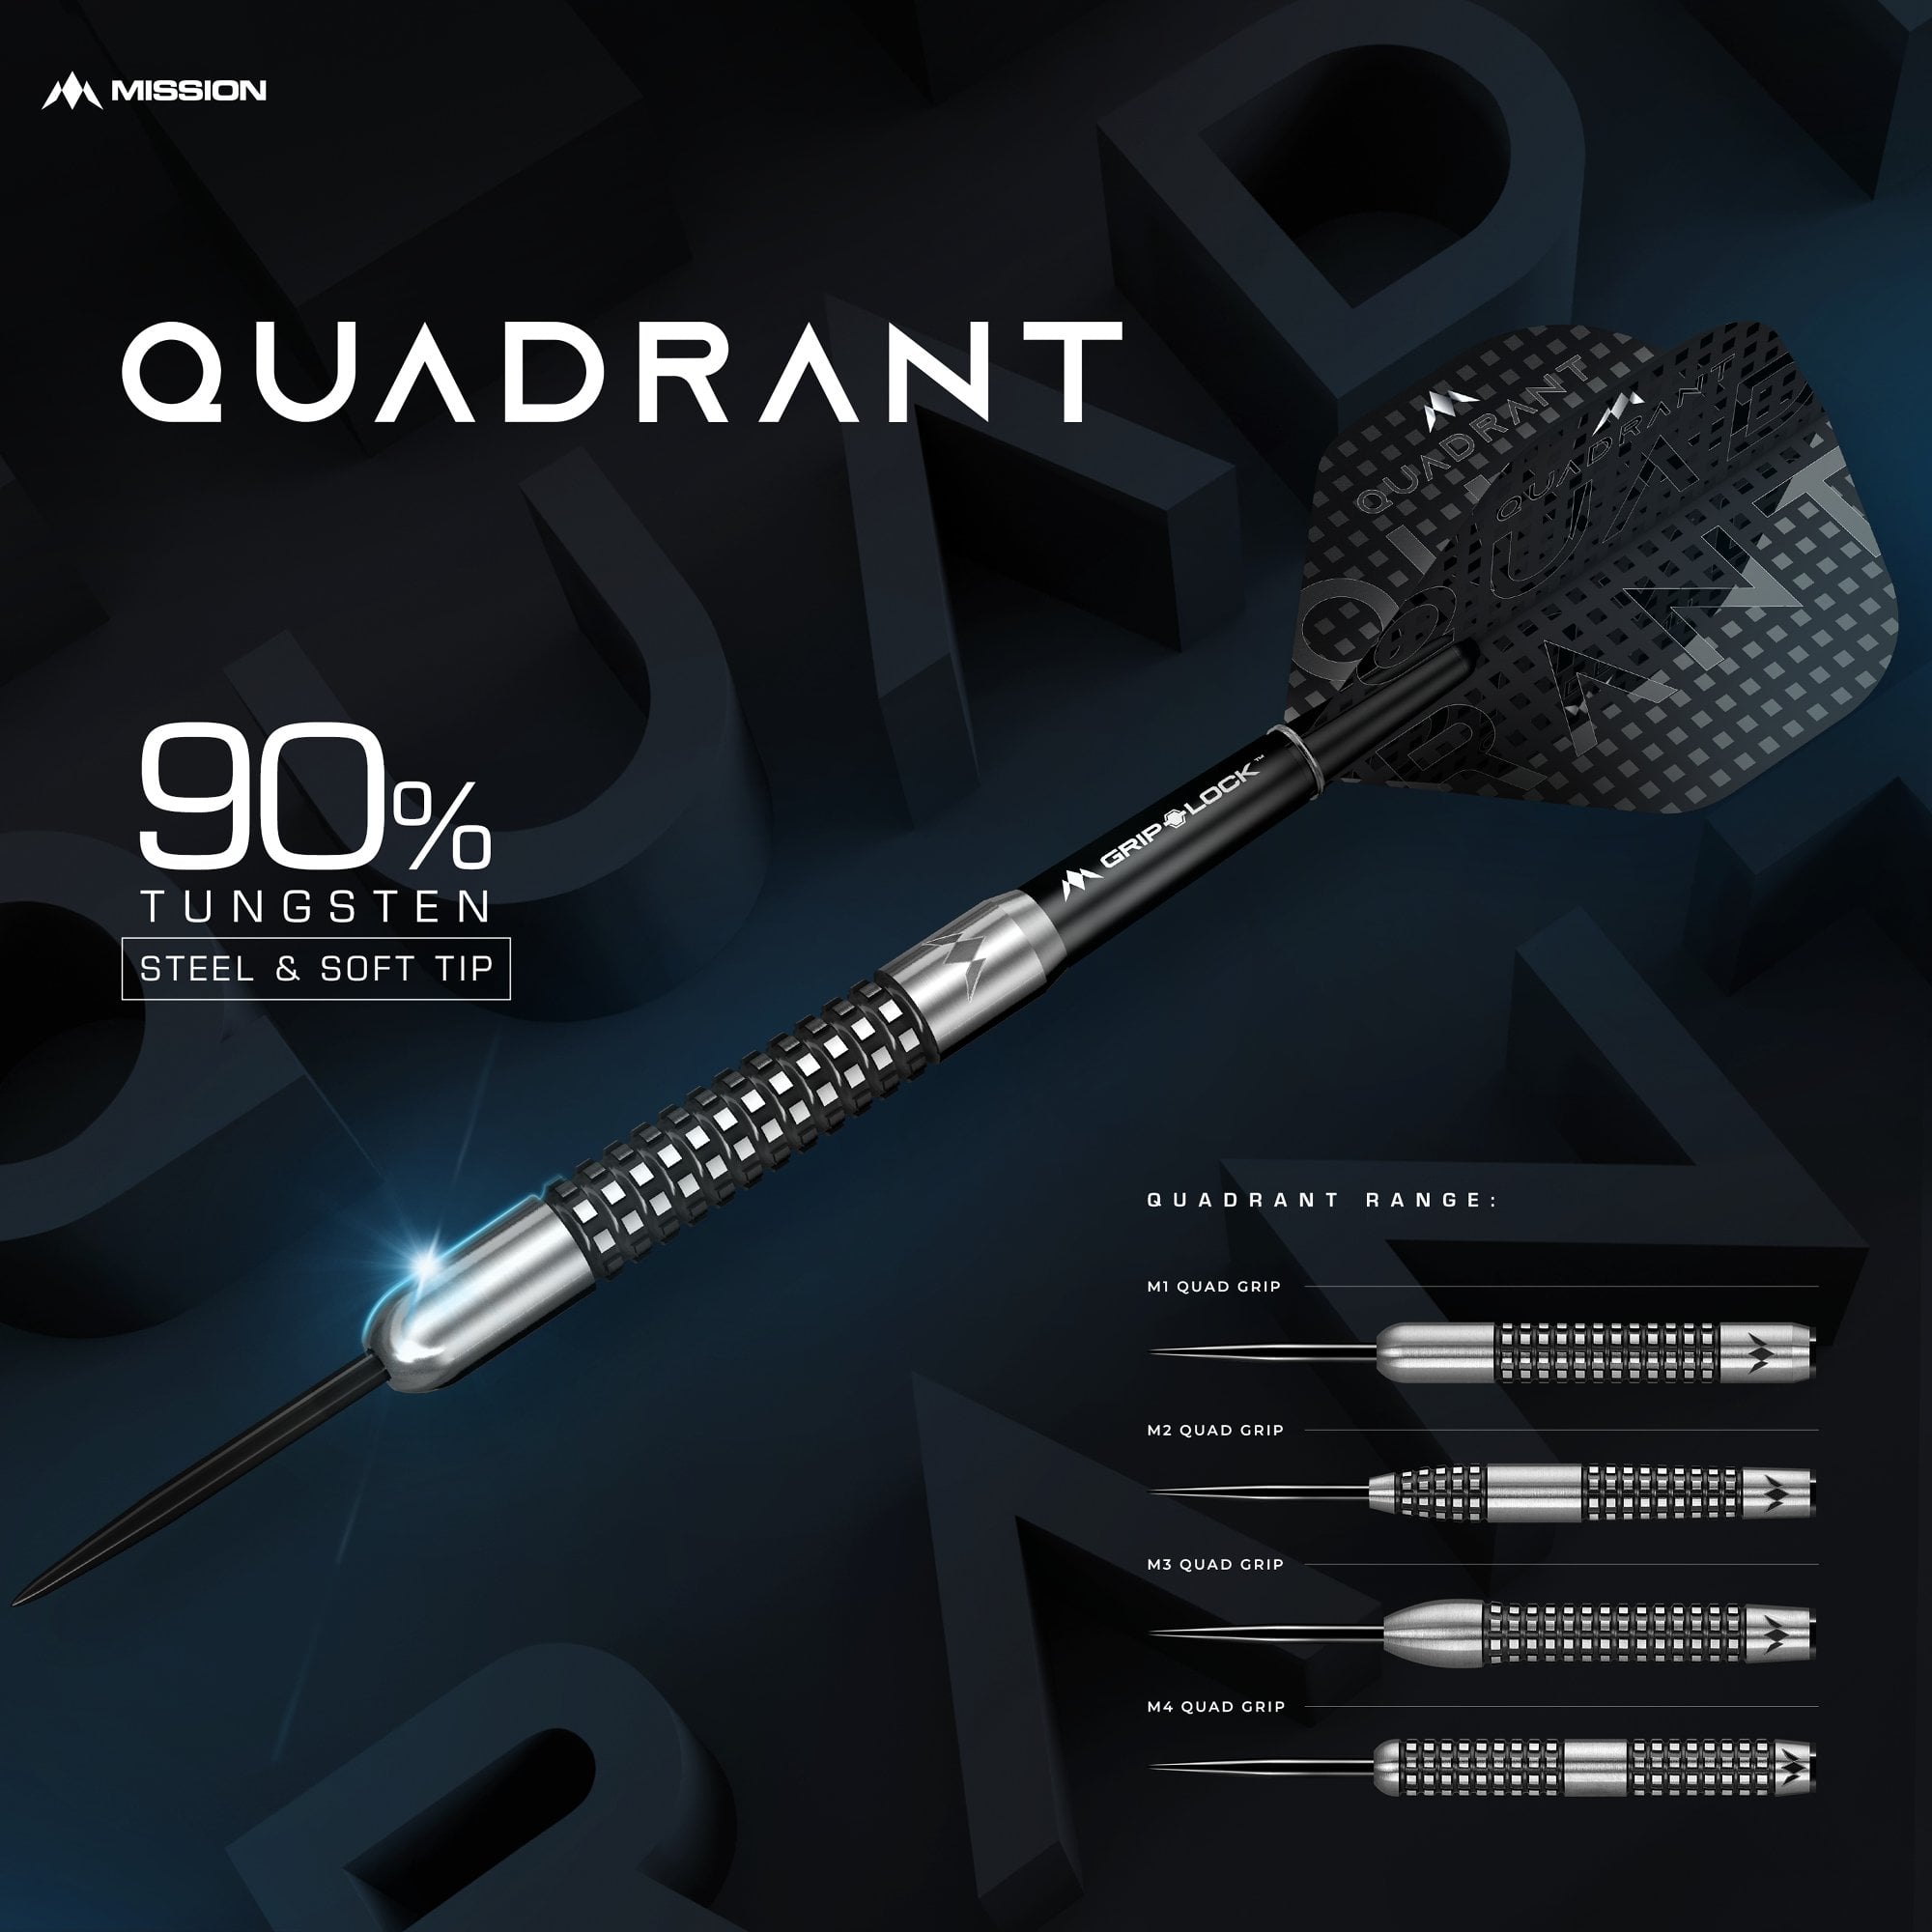 Mission Quadrant Darts - Soft Tip - M3 - Quad Grip